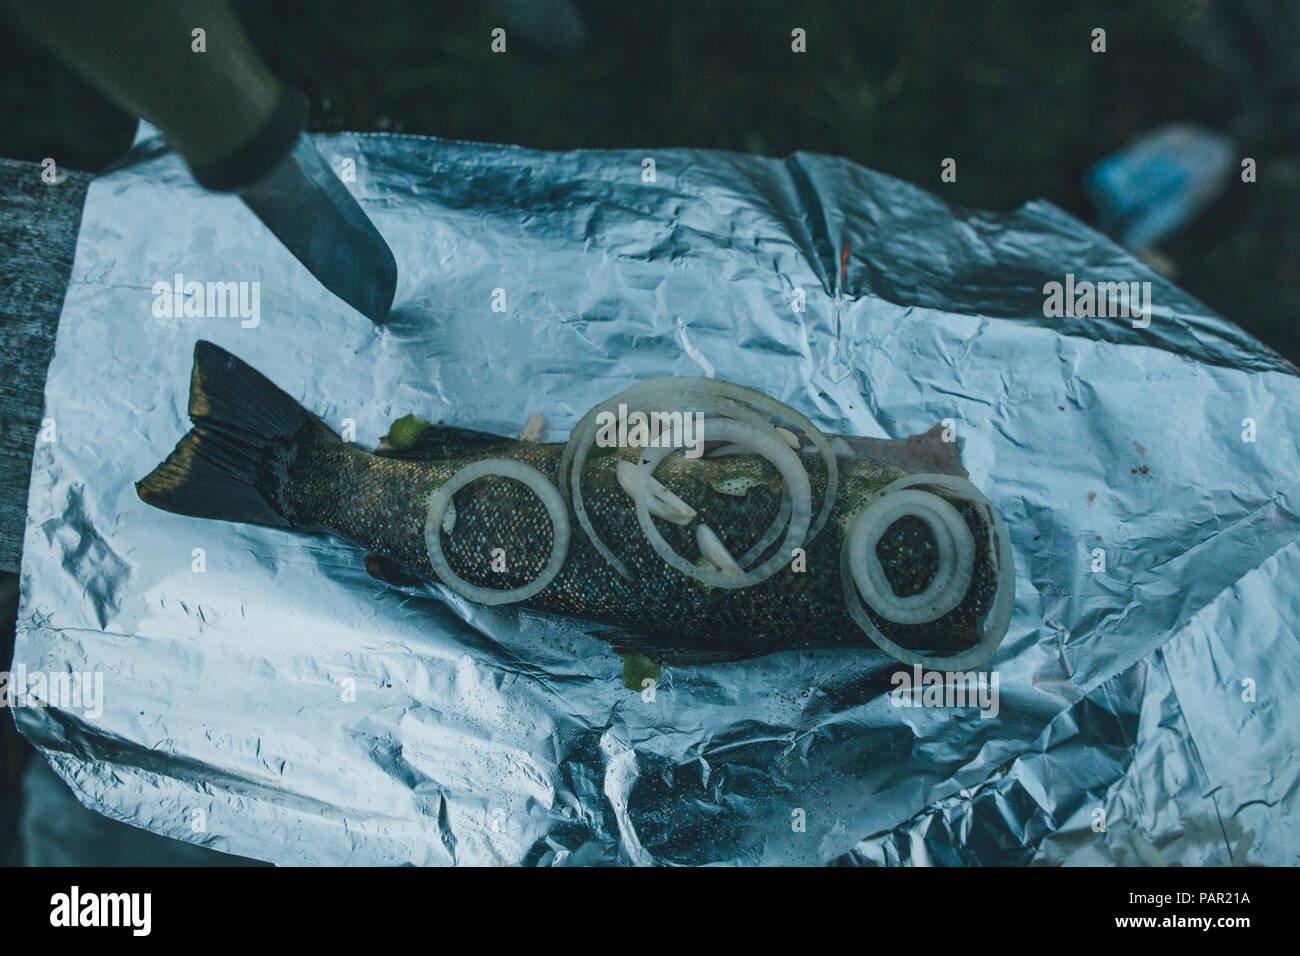 Norwegen, Lofoten, Moskenesoy, frisch gefangener Fisch in Alufolie, bereit zu kochen Stockfoto